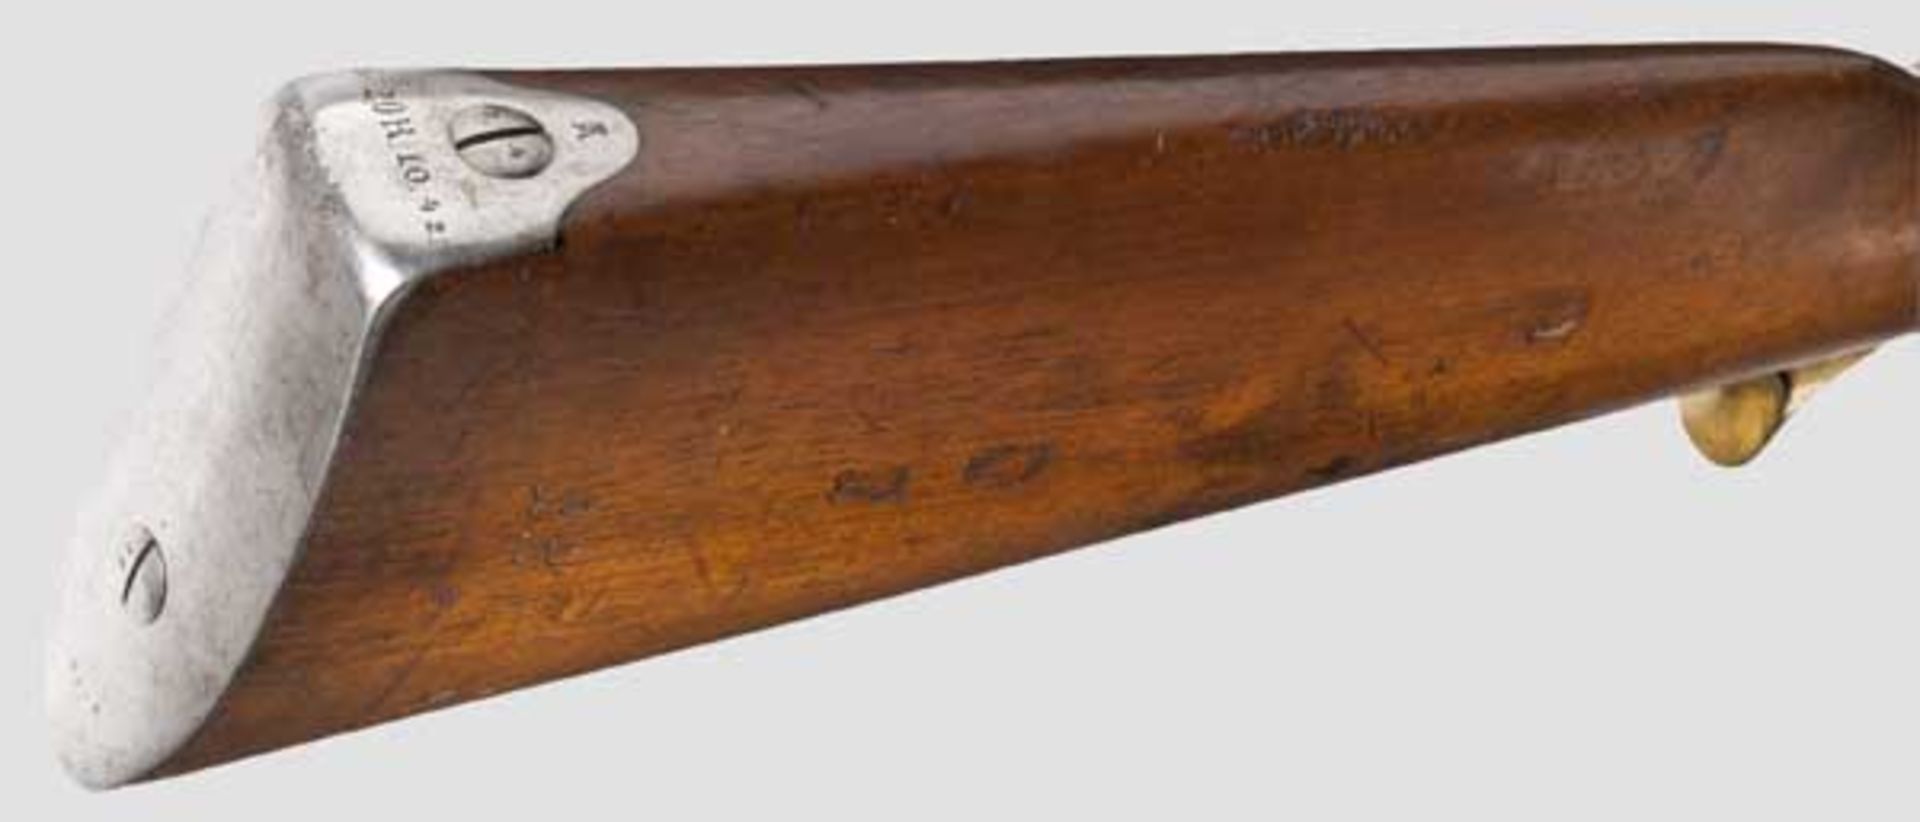 Zündnadelgewehr M 1862 Kaliber 15,4 mm, Nummer 4274, nummerngleich (inkl. der Schrauben). Brünierter - Bild 4 aus 4